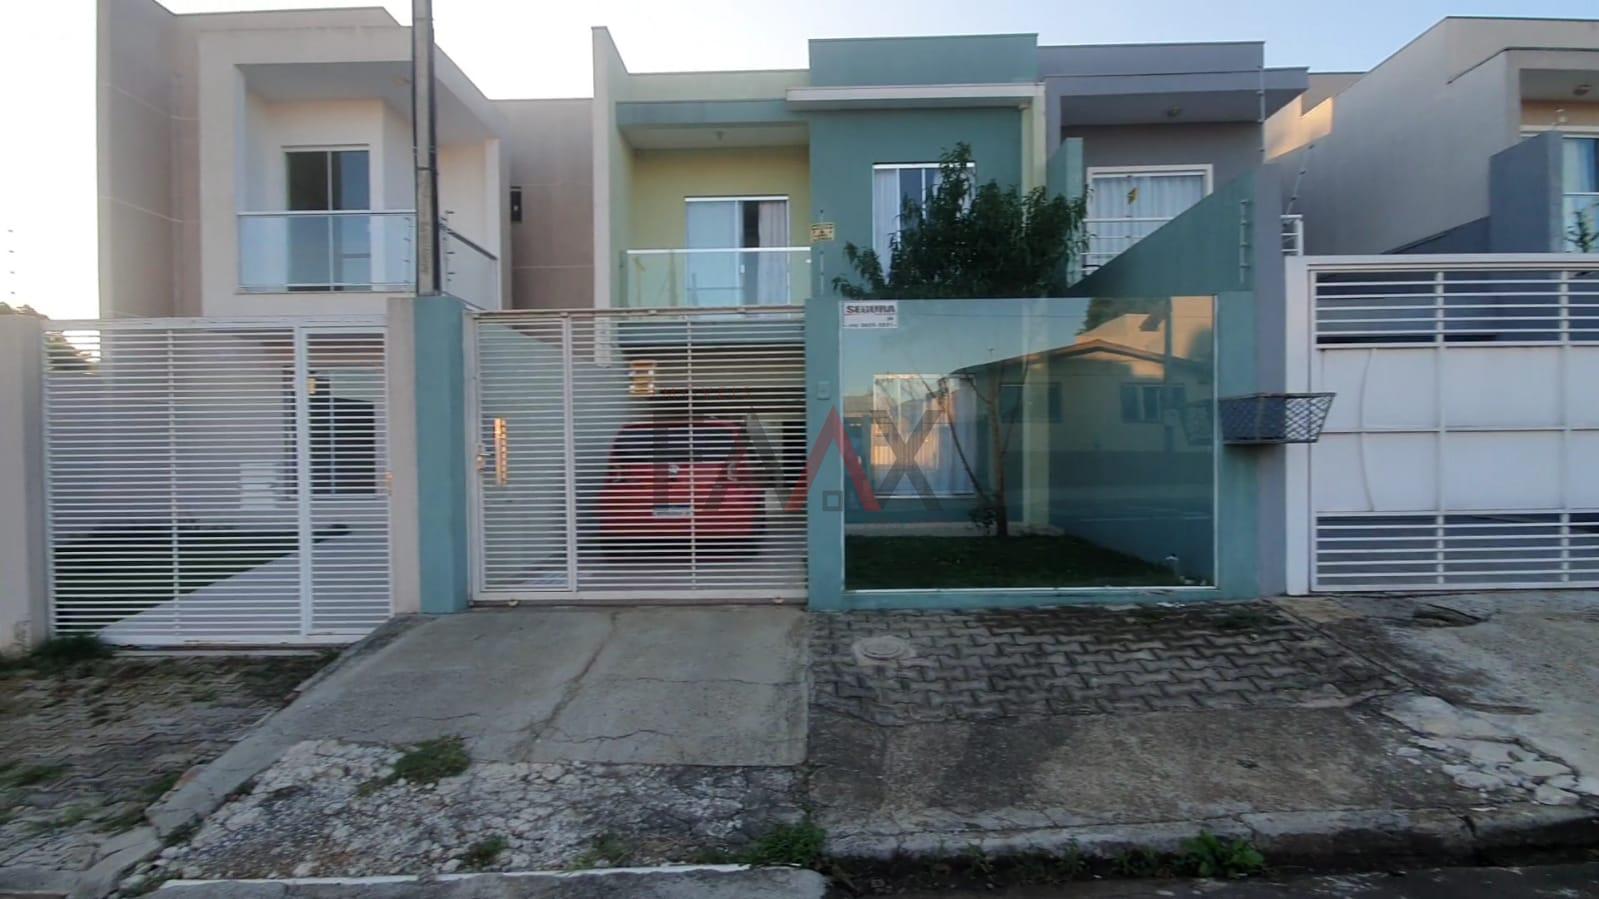 Sobrado com 3 dormitórios à venda,150.00 m², DOS ESTADOS, GUARAPUAVA - PR